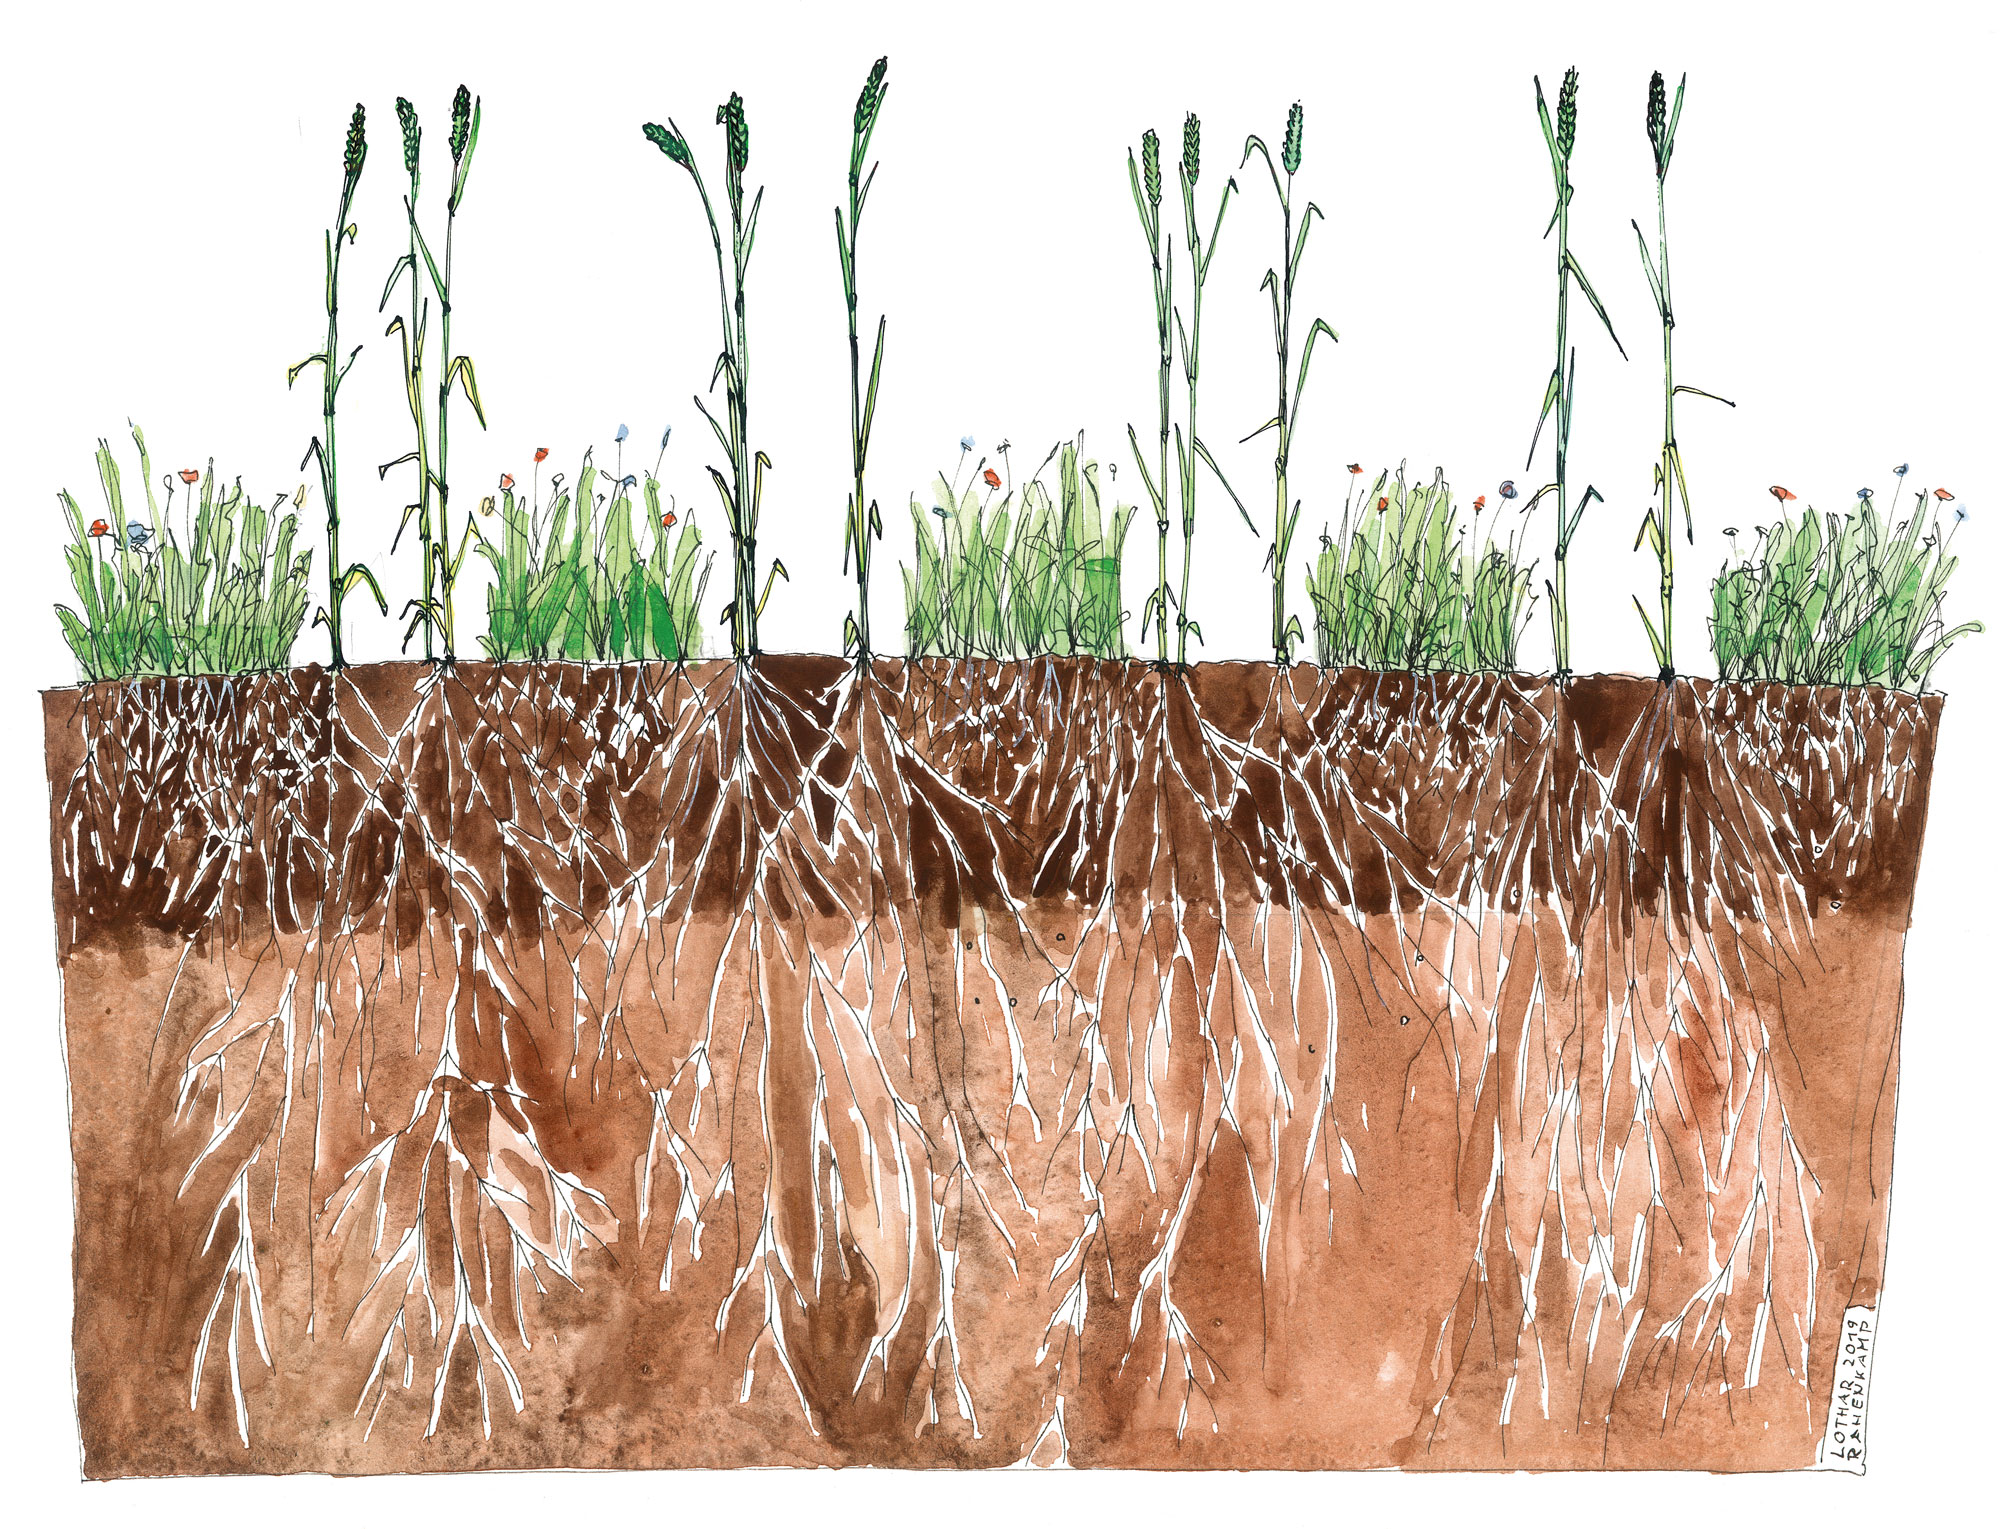 La semina di cover crop intervallate da file a larghezze fisse produce effetti benefici sia per la coltura principale sia per l'ambiente